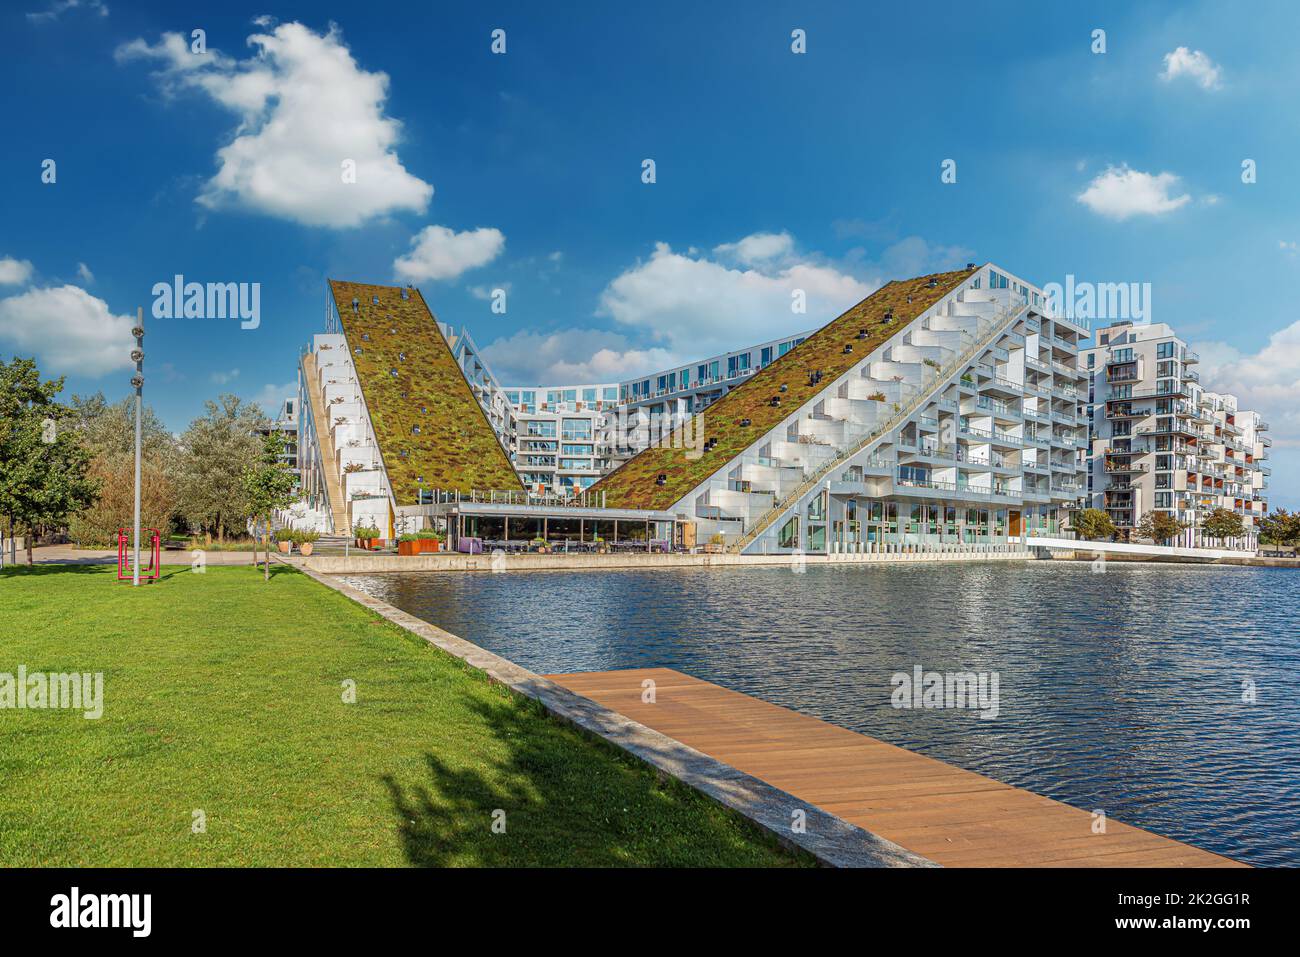 8 Tallet , également connu sous le nom de Big House, est un grand développement à usage mixte construit sous la forme d'une figure 8. Copenhague, Danemark Banque D'Images